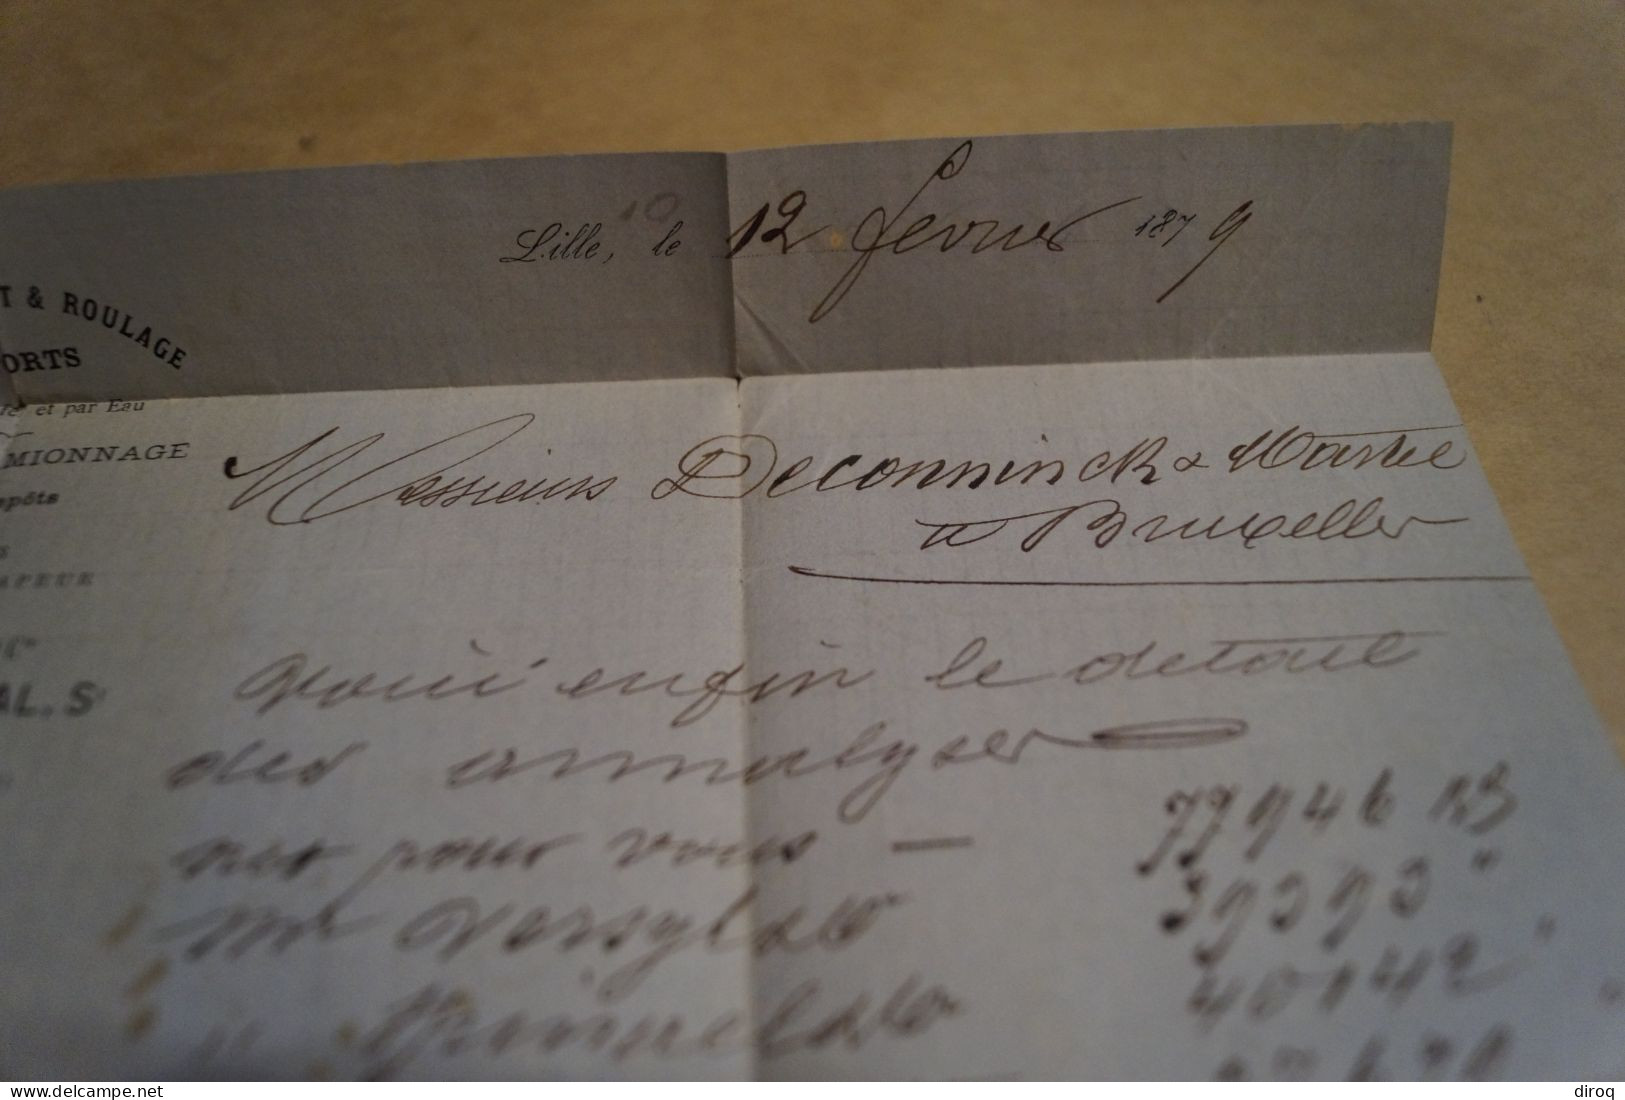 envoi de 1879 ,belle oblitération de Lille,en bel état pour collection